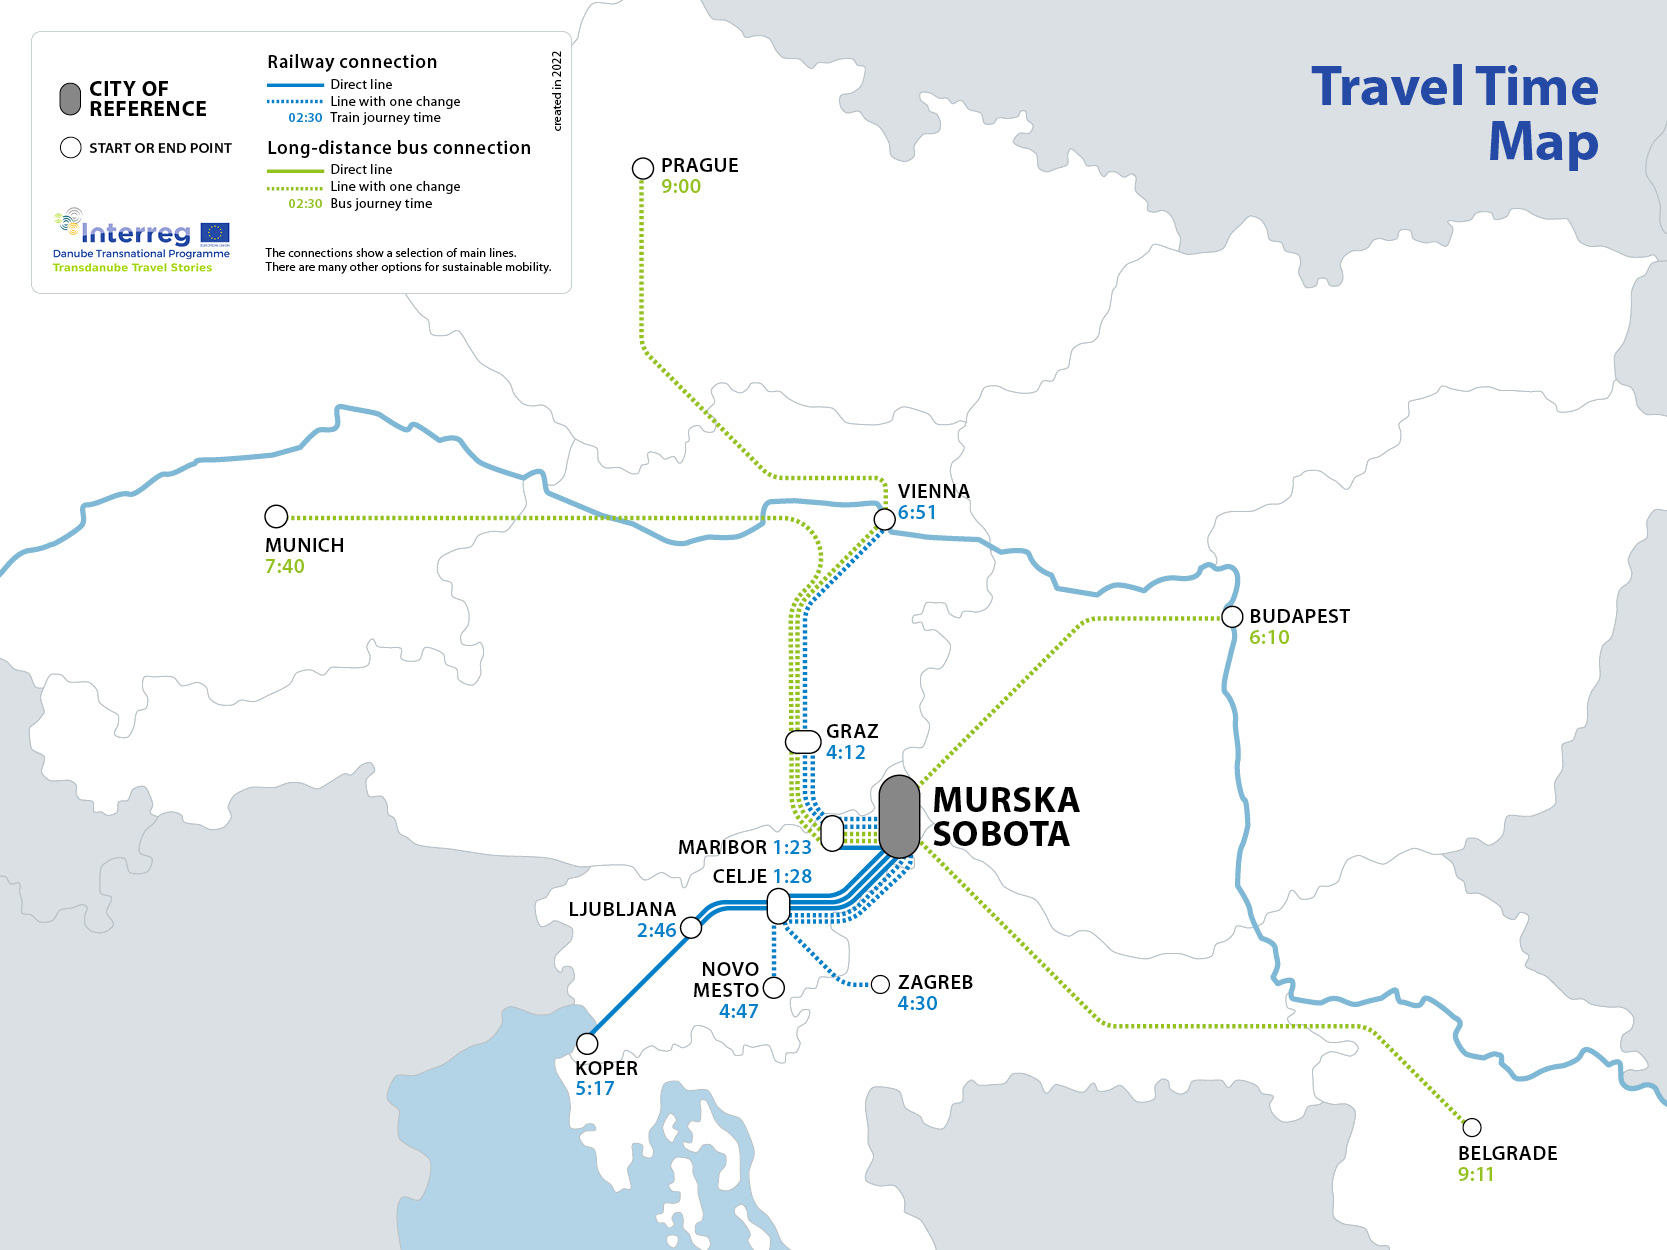 Travel Time Map - Murska Sobota (Vergrößerte Ansicht)